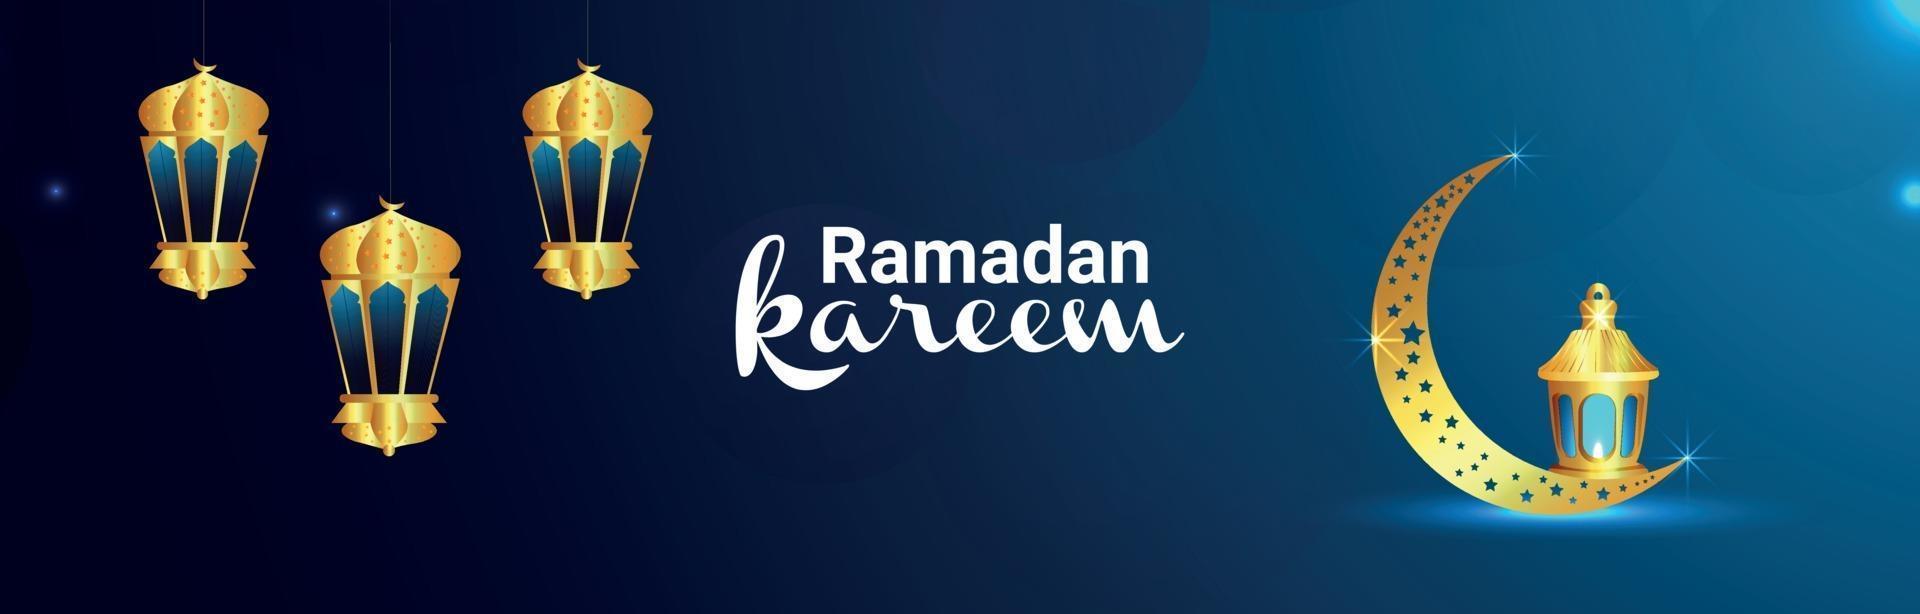 ramadan kareem-banner met gouden islamitische lantaarn en maan vector